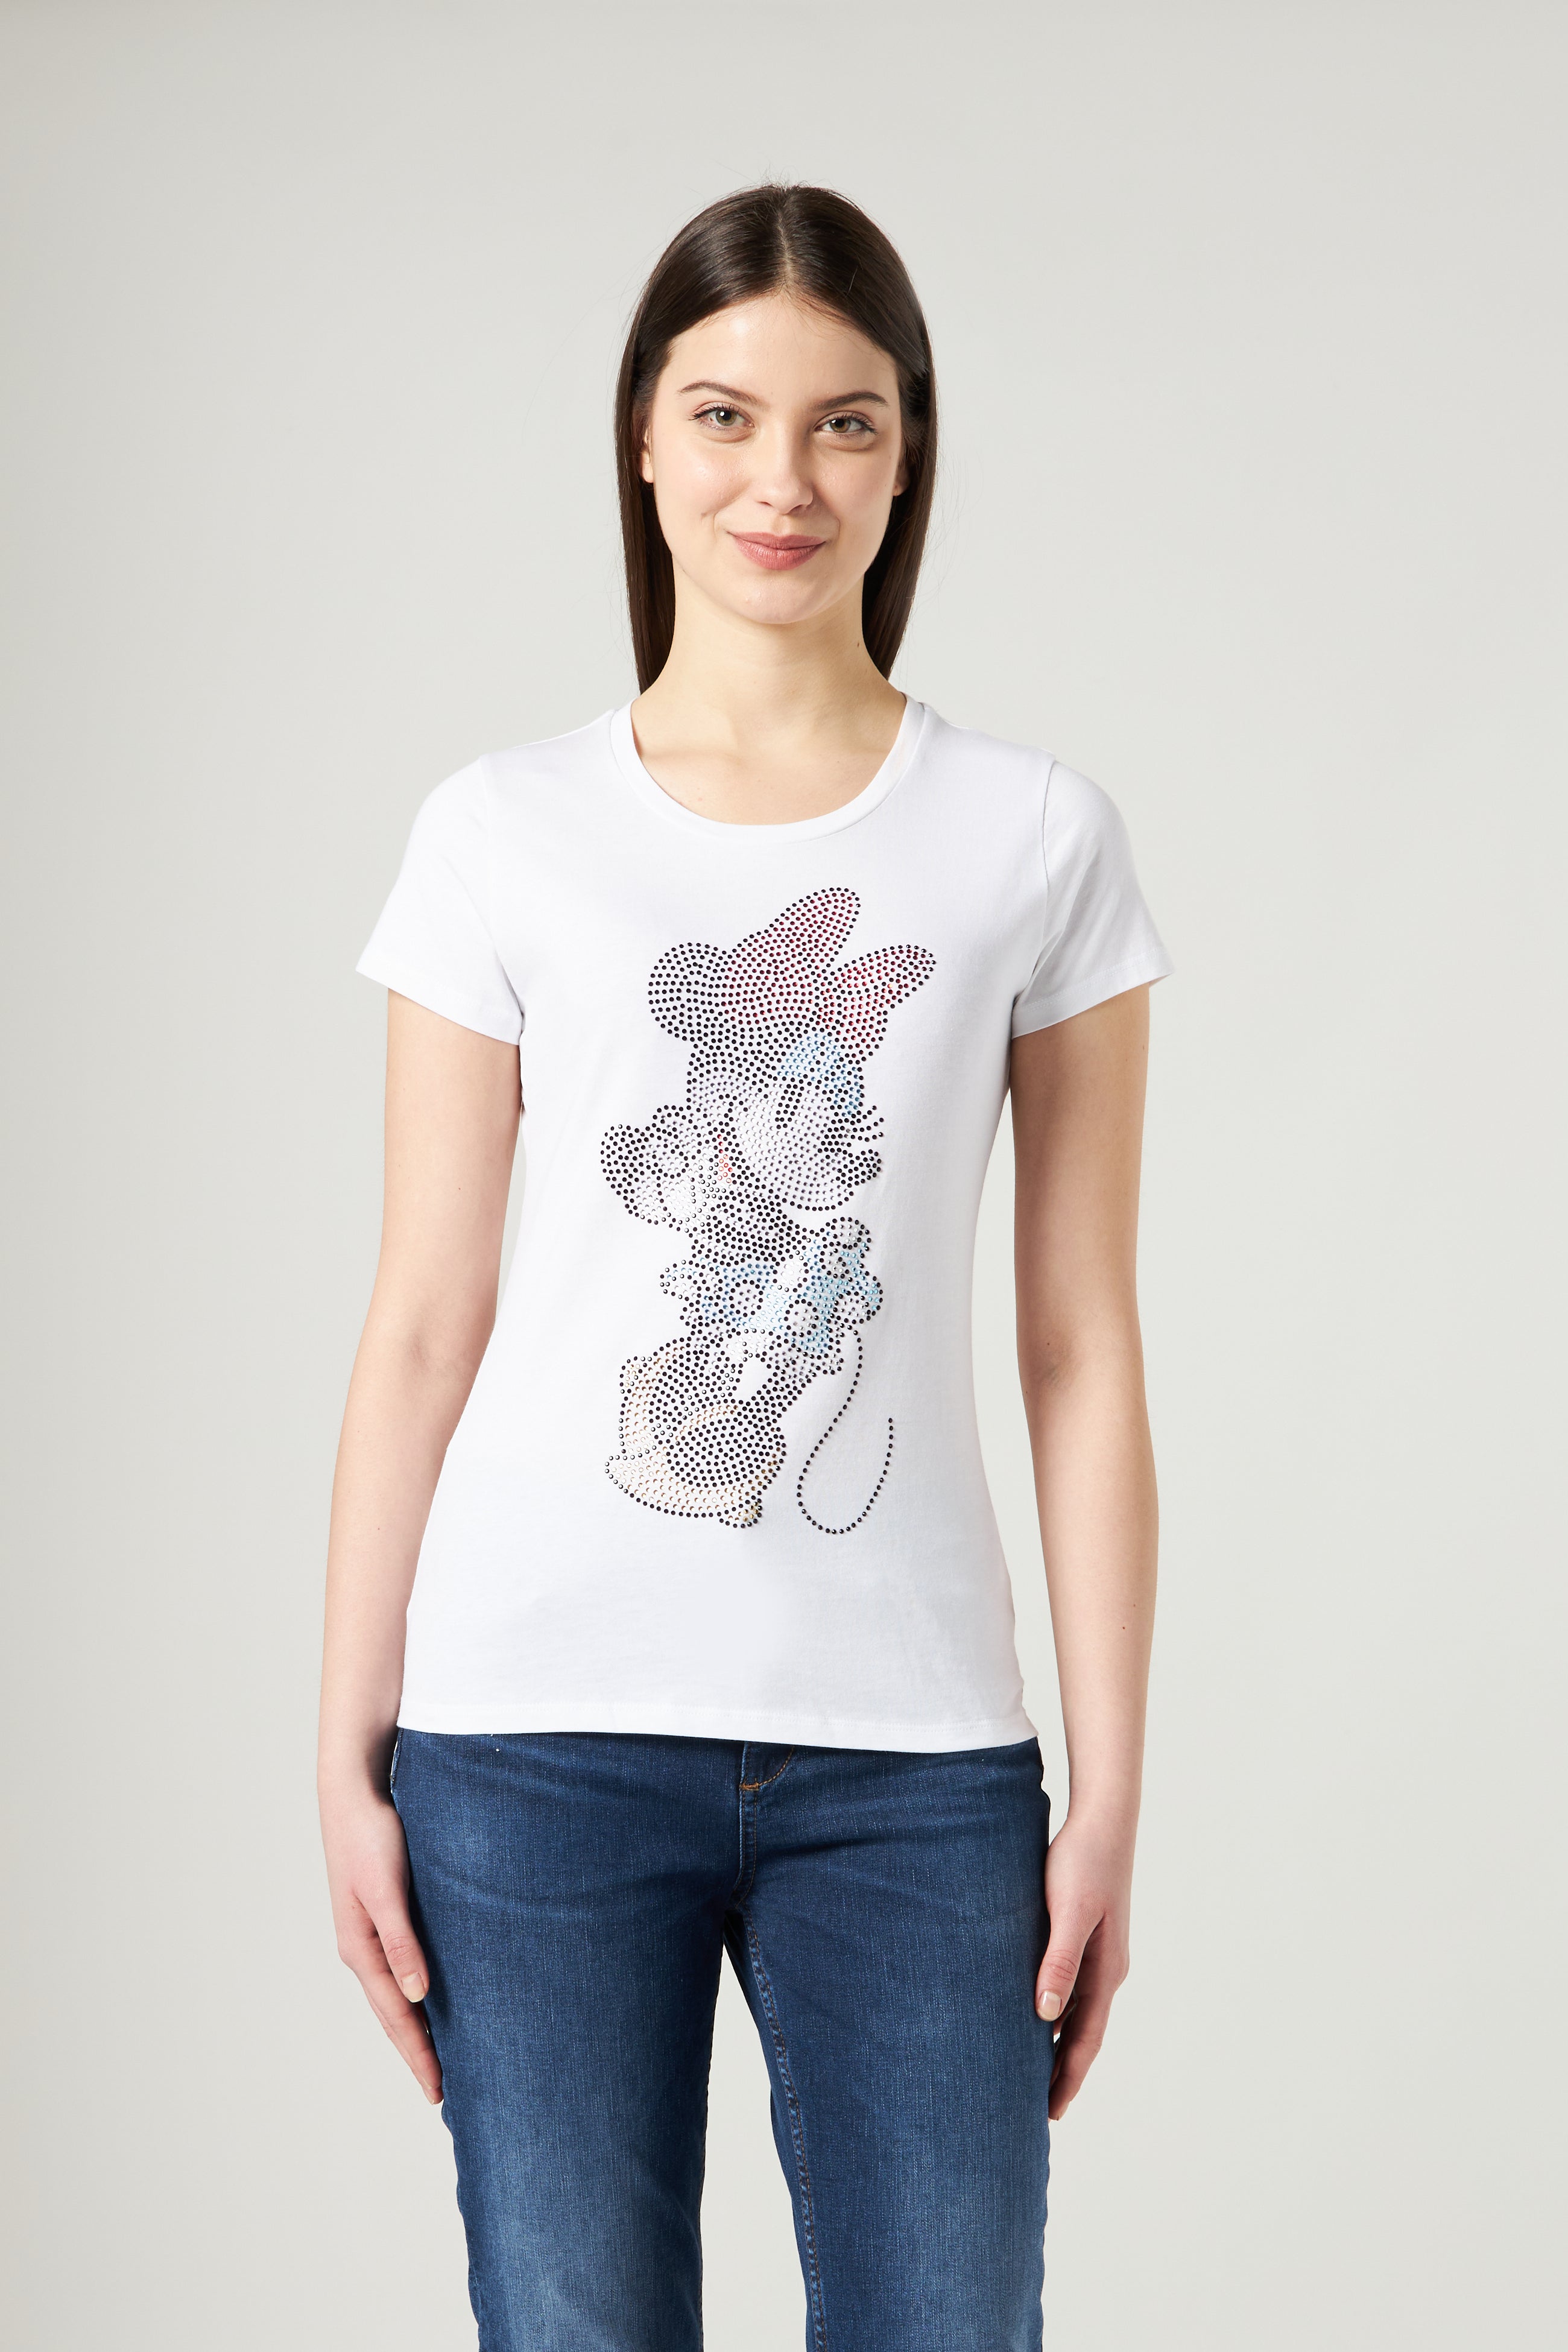 LIU JO T-shirt Walt Disney N